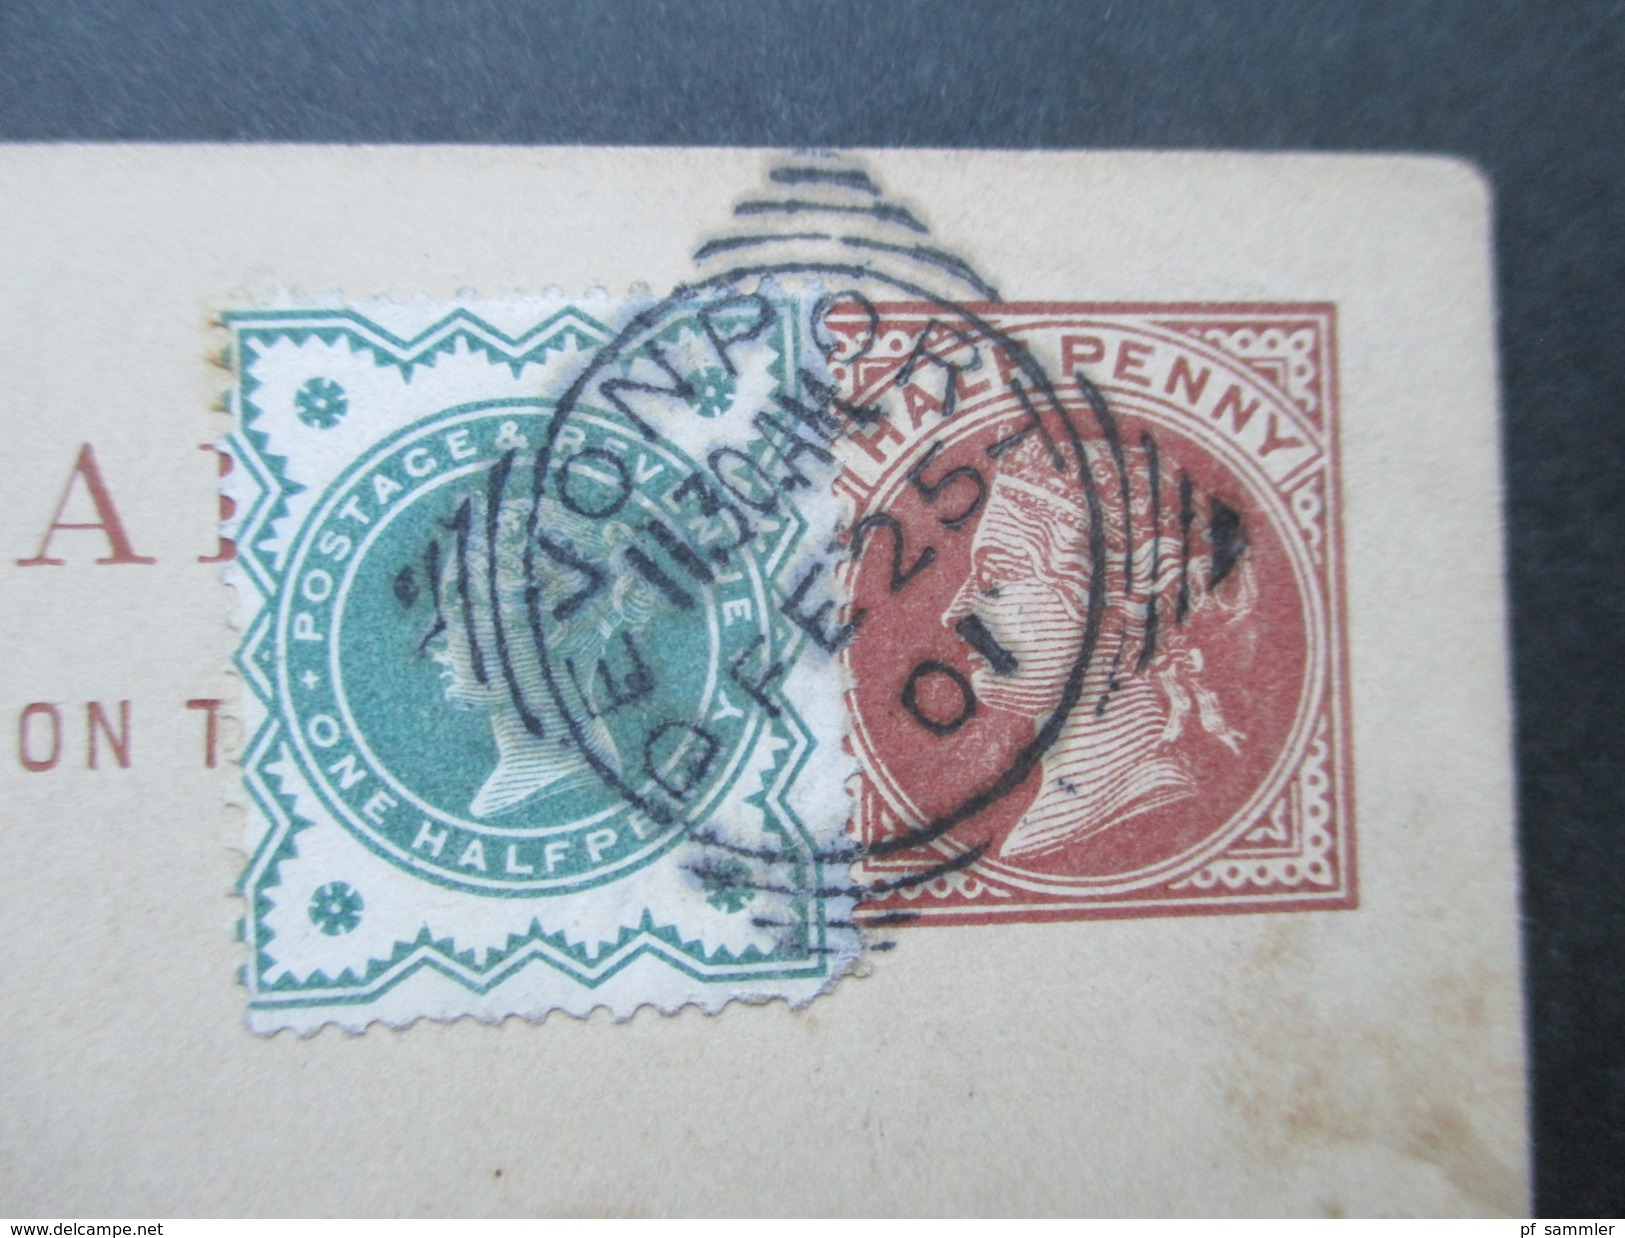 GB 1899 - 1920 Registered letter / Postcards / Streifband! 7 Stück! aus einer Korrespondenz! Interessant?!